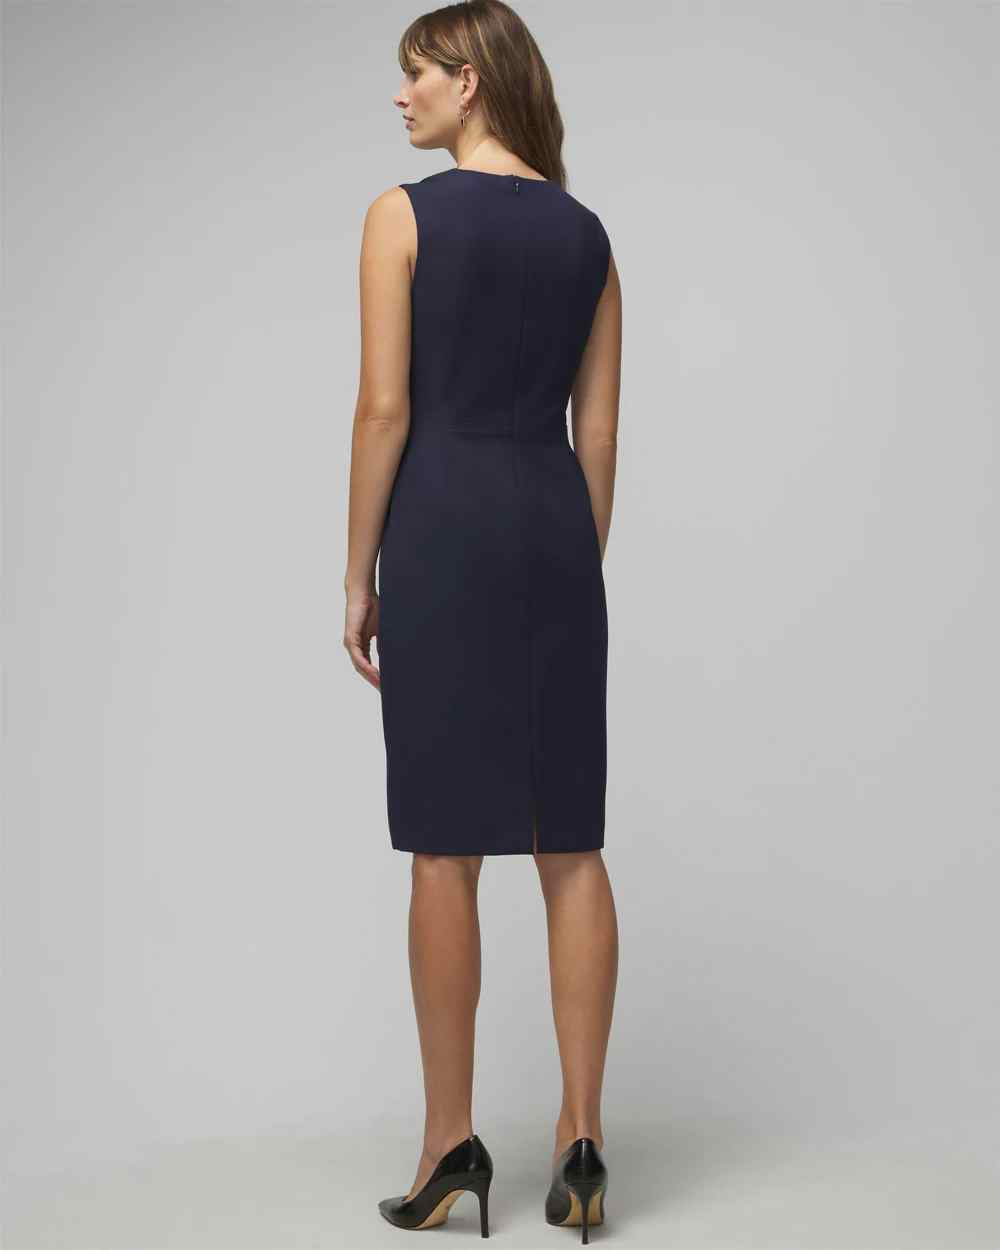 Shop Women's Dresses for Fall | White House Black Market